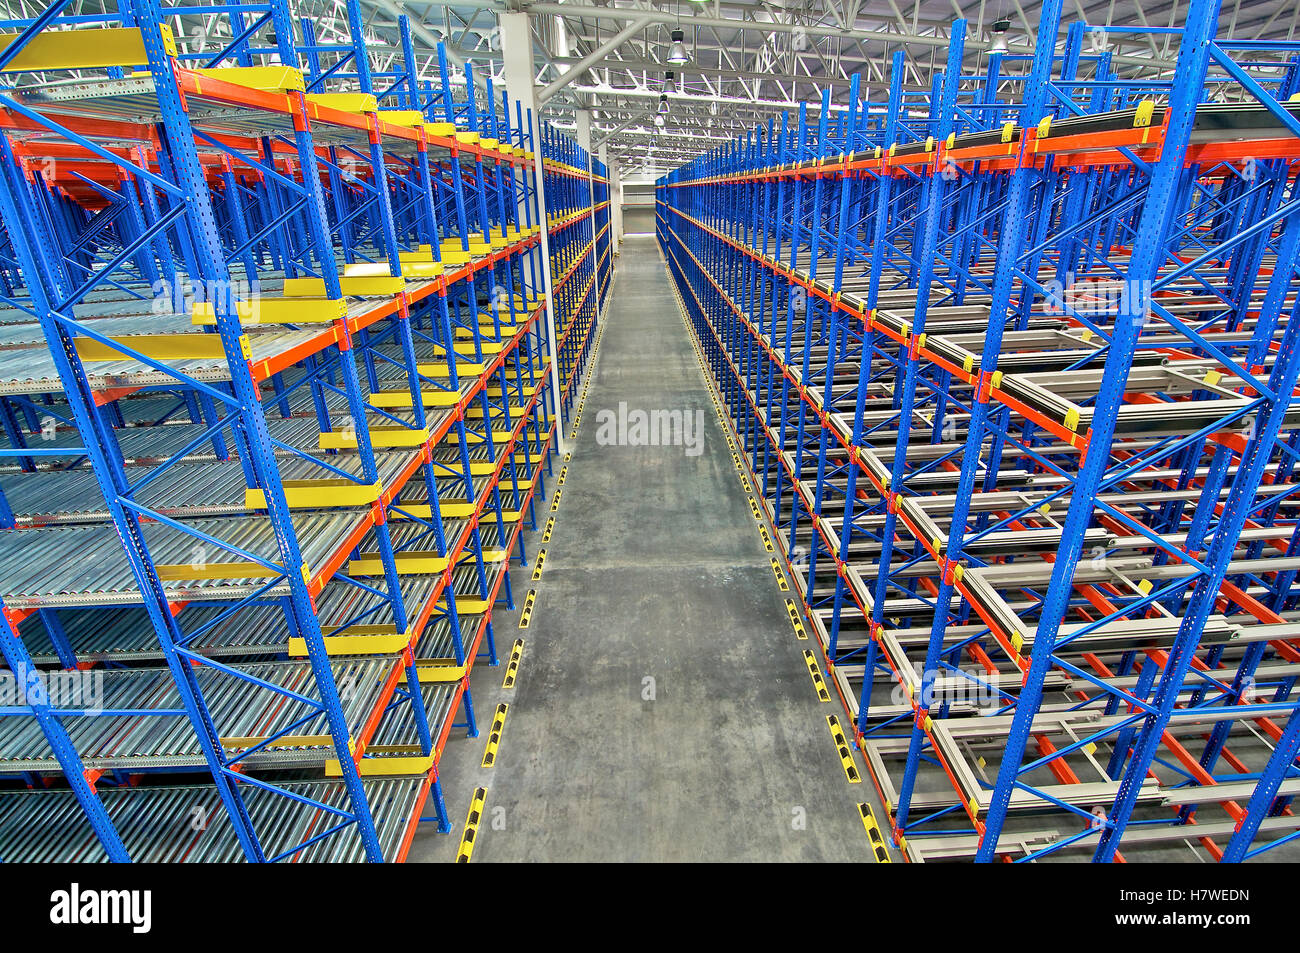 Warehouse  shelving  storage, metal, pallet racking system Stock Photo